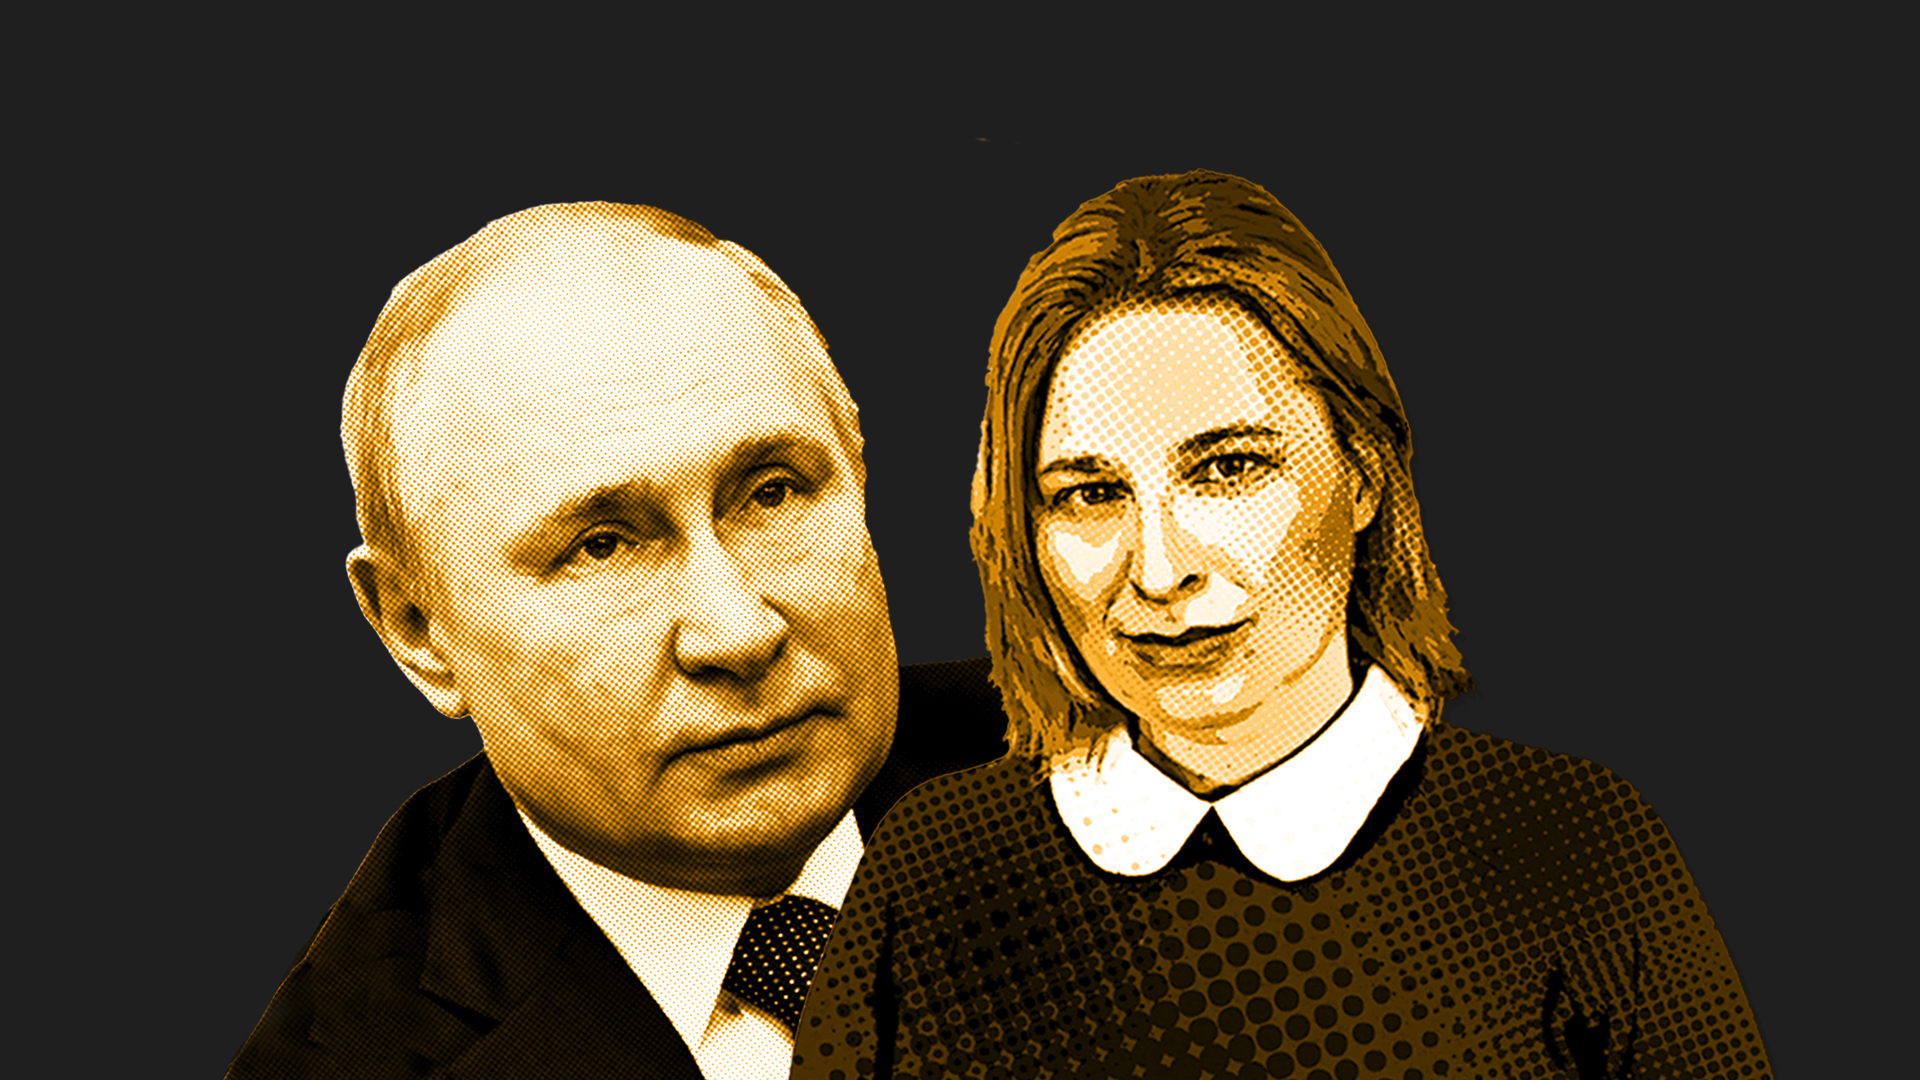 Ukraine-Krieg: Warum spricht Putin von „Entnazifizierung“? Man sieht die Politologin Natascha Strobl und Wladimir Putin. Sie sind im #NatsAnalyseSujet. Der Hintergrund ist dunkel.